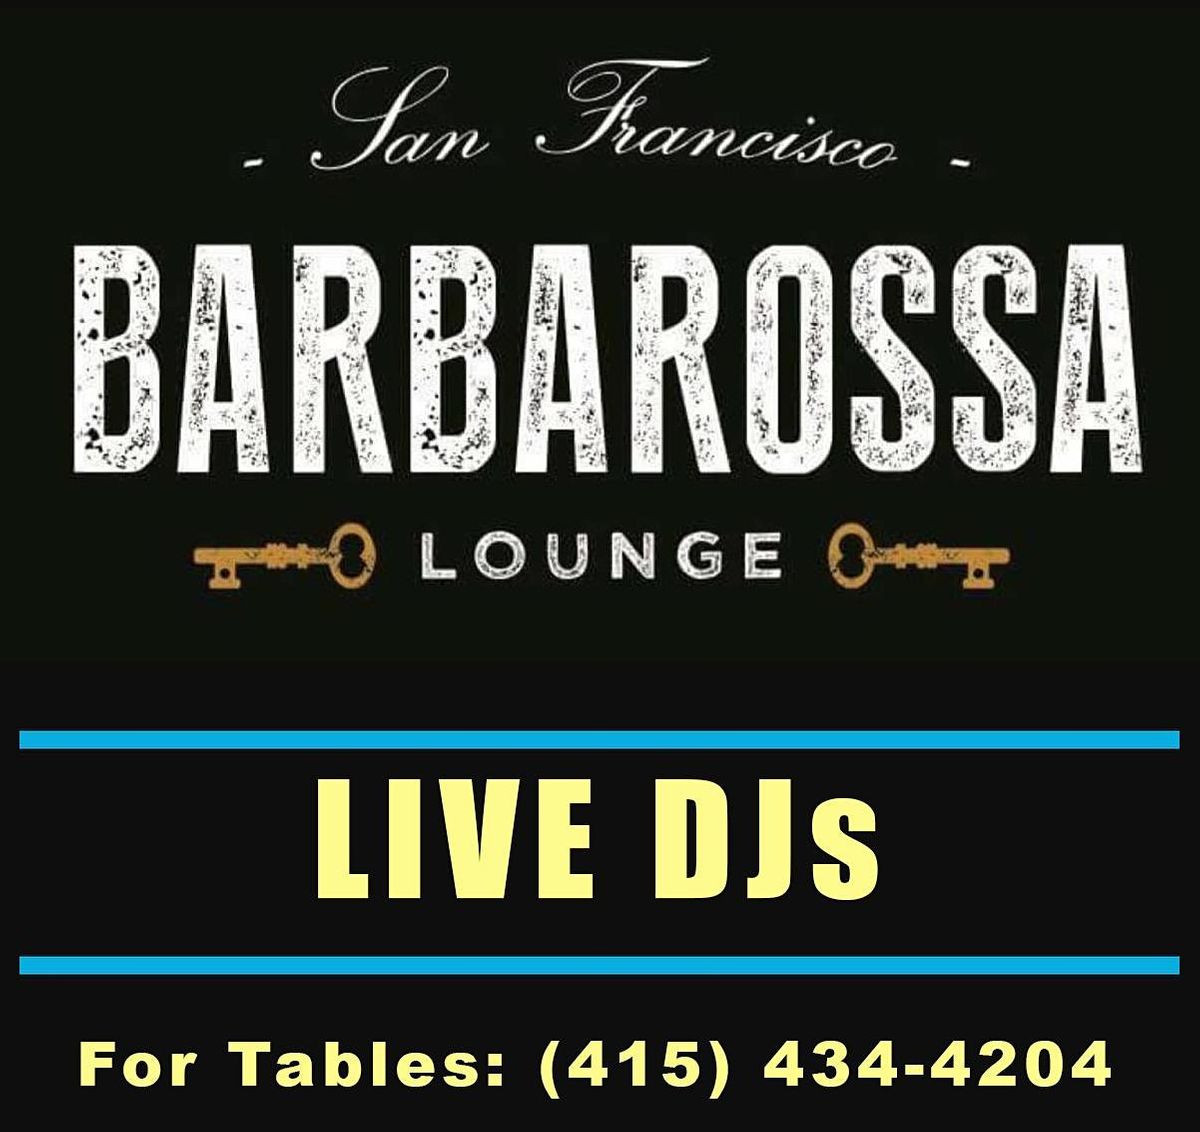 Fridays at Barbarossa Lounge.  Live DJs, Craft Cocktails & Bottle Service